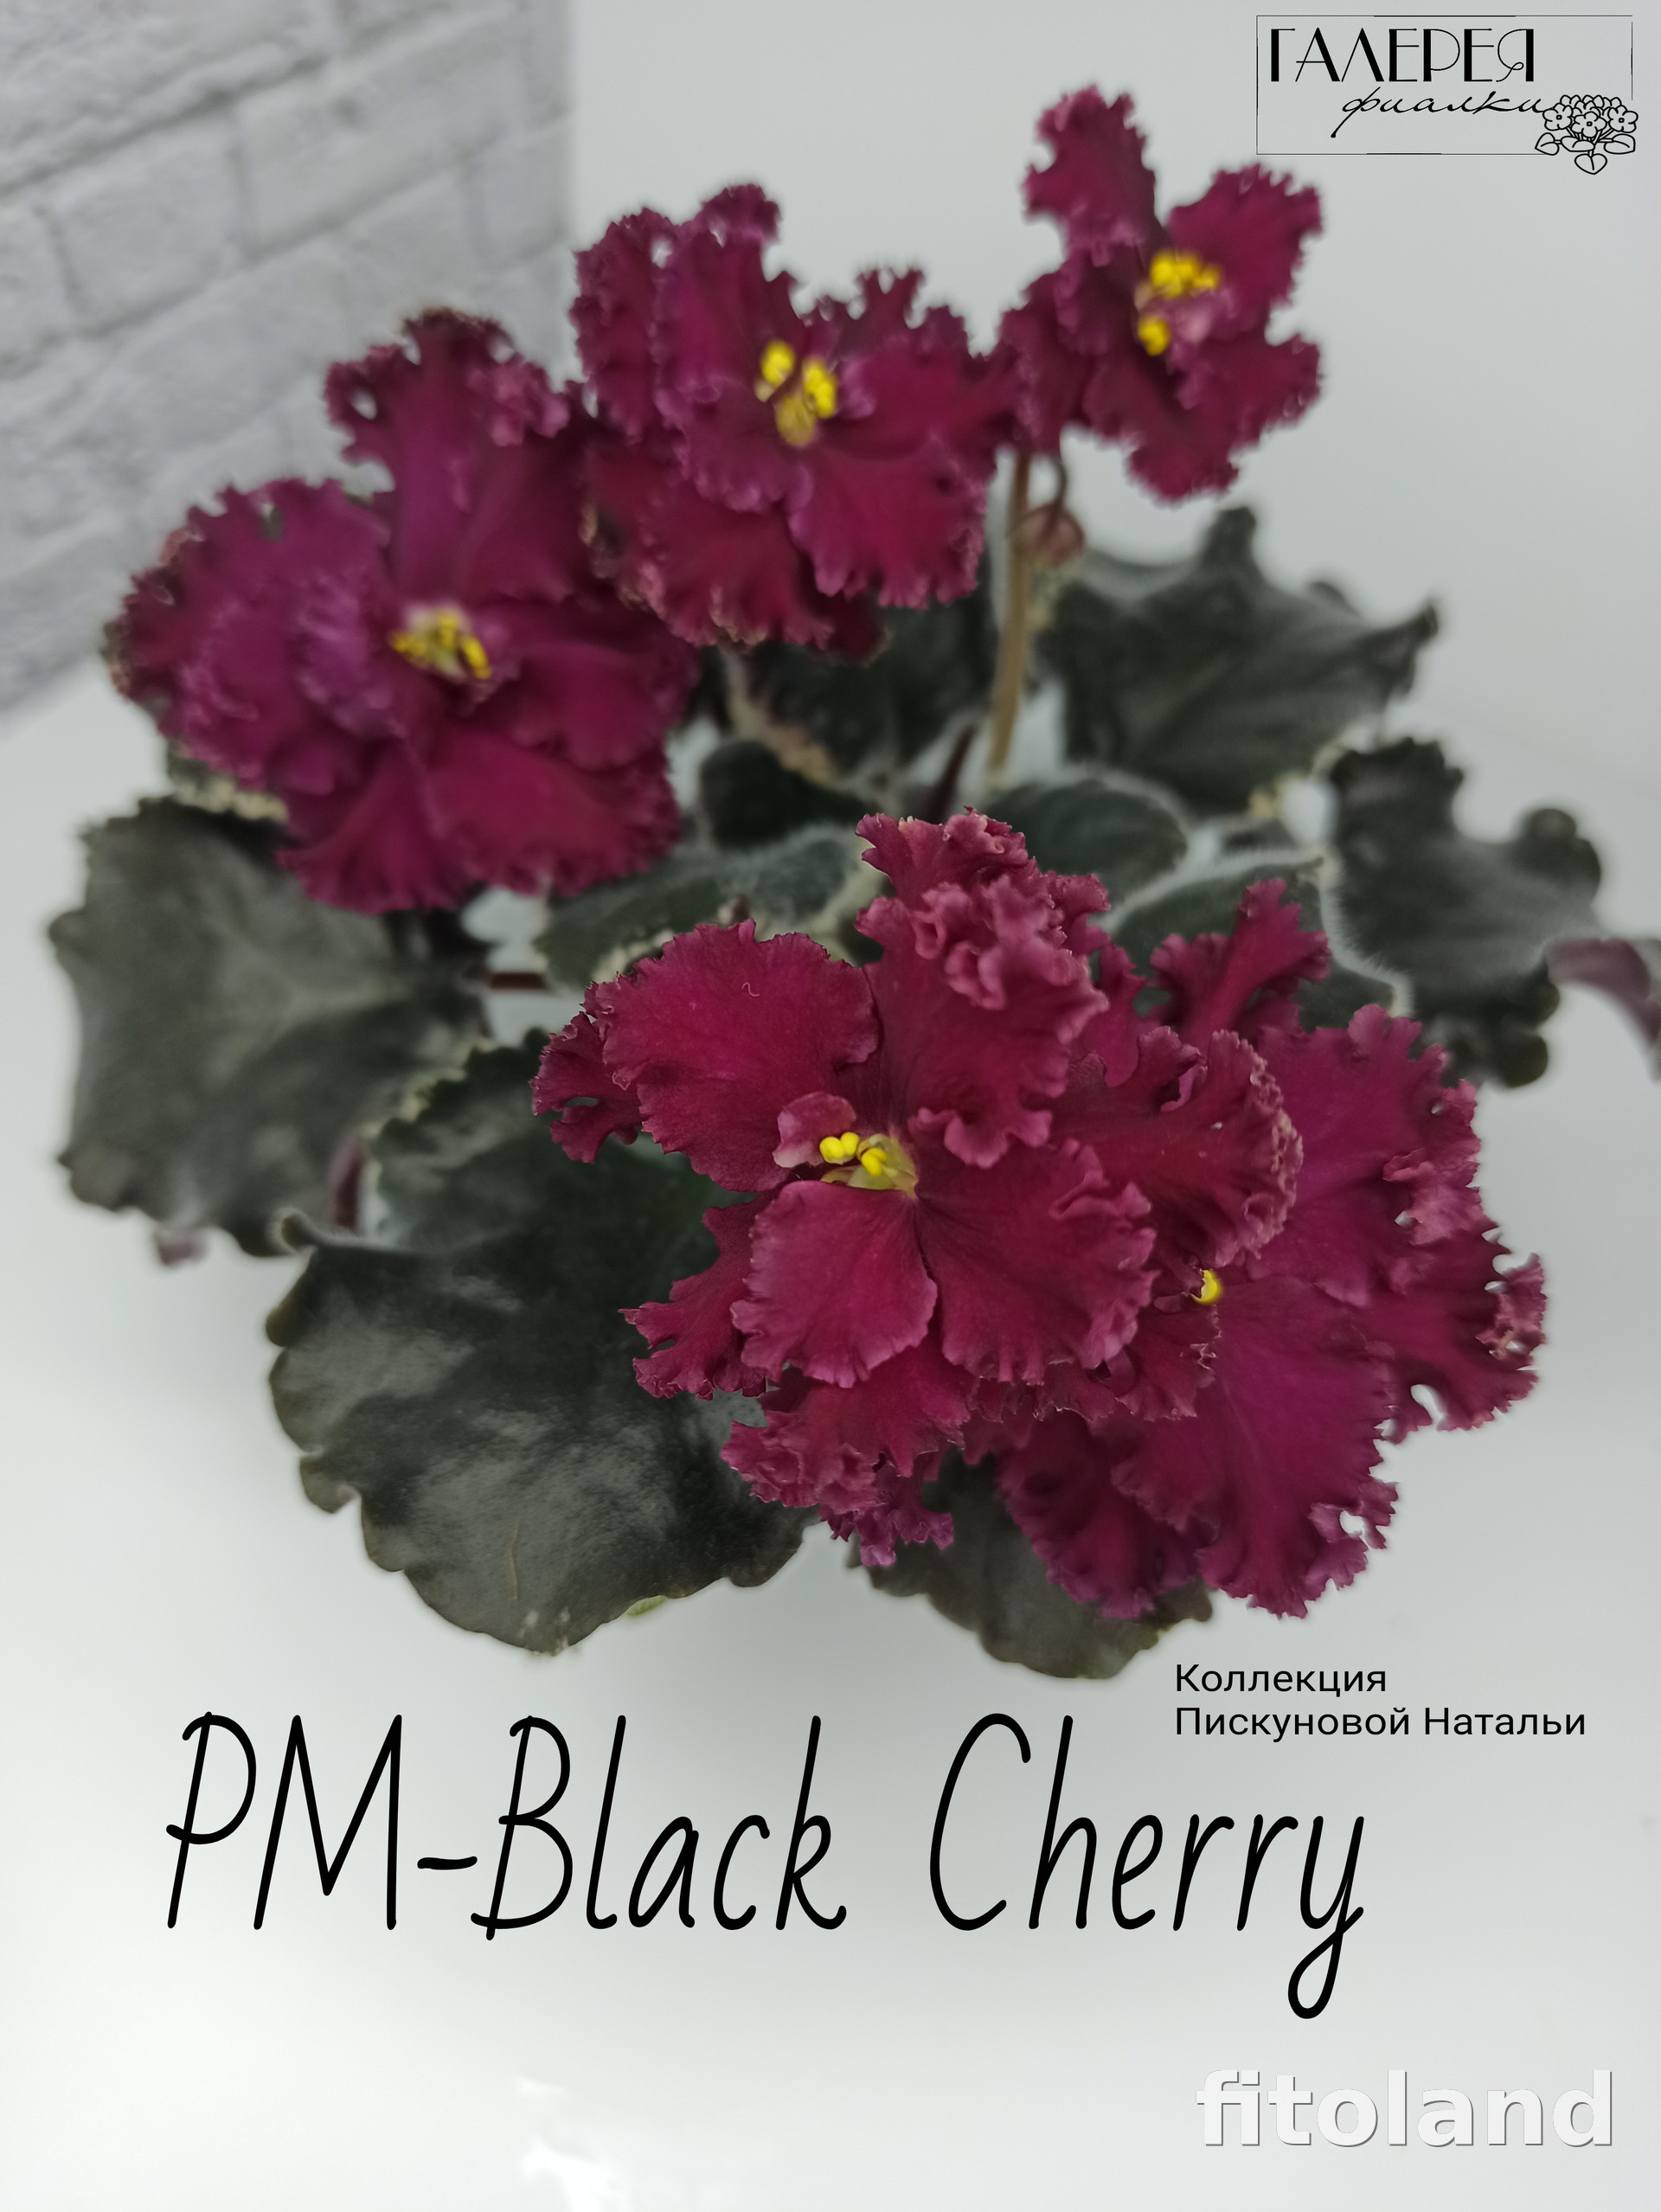 Фиалка РМ-Black Cherry, фото